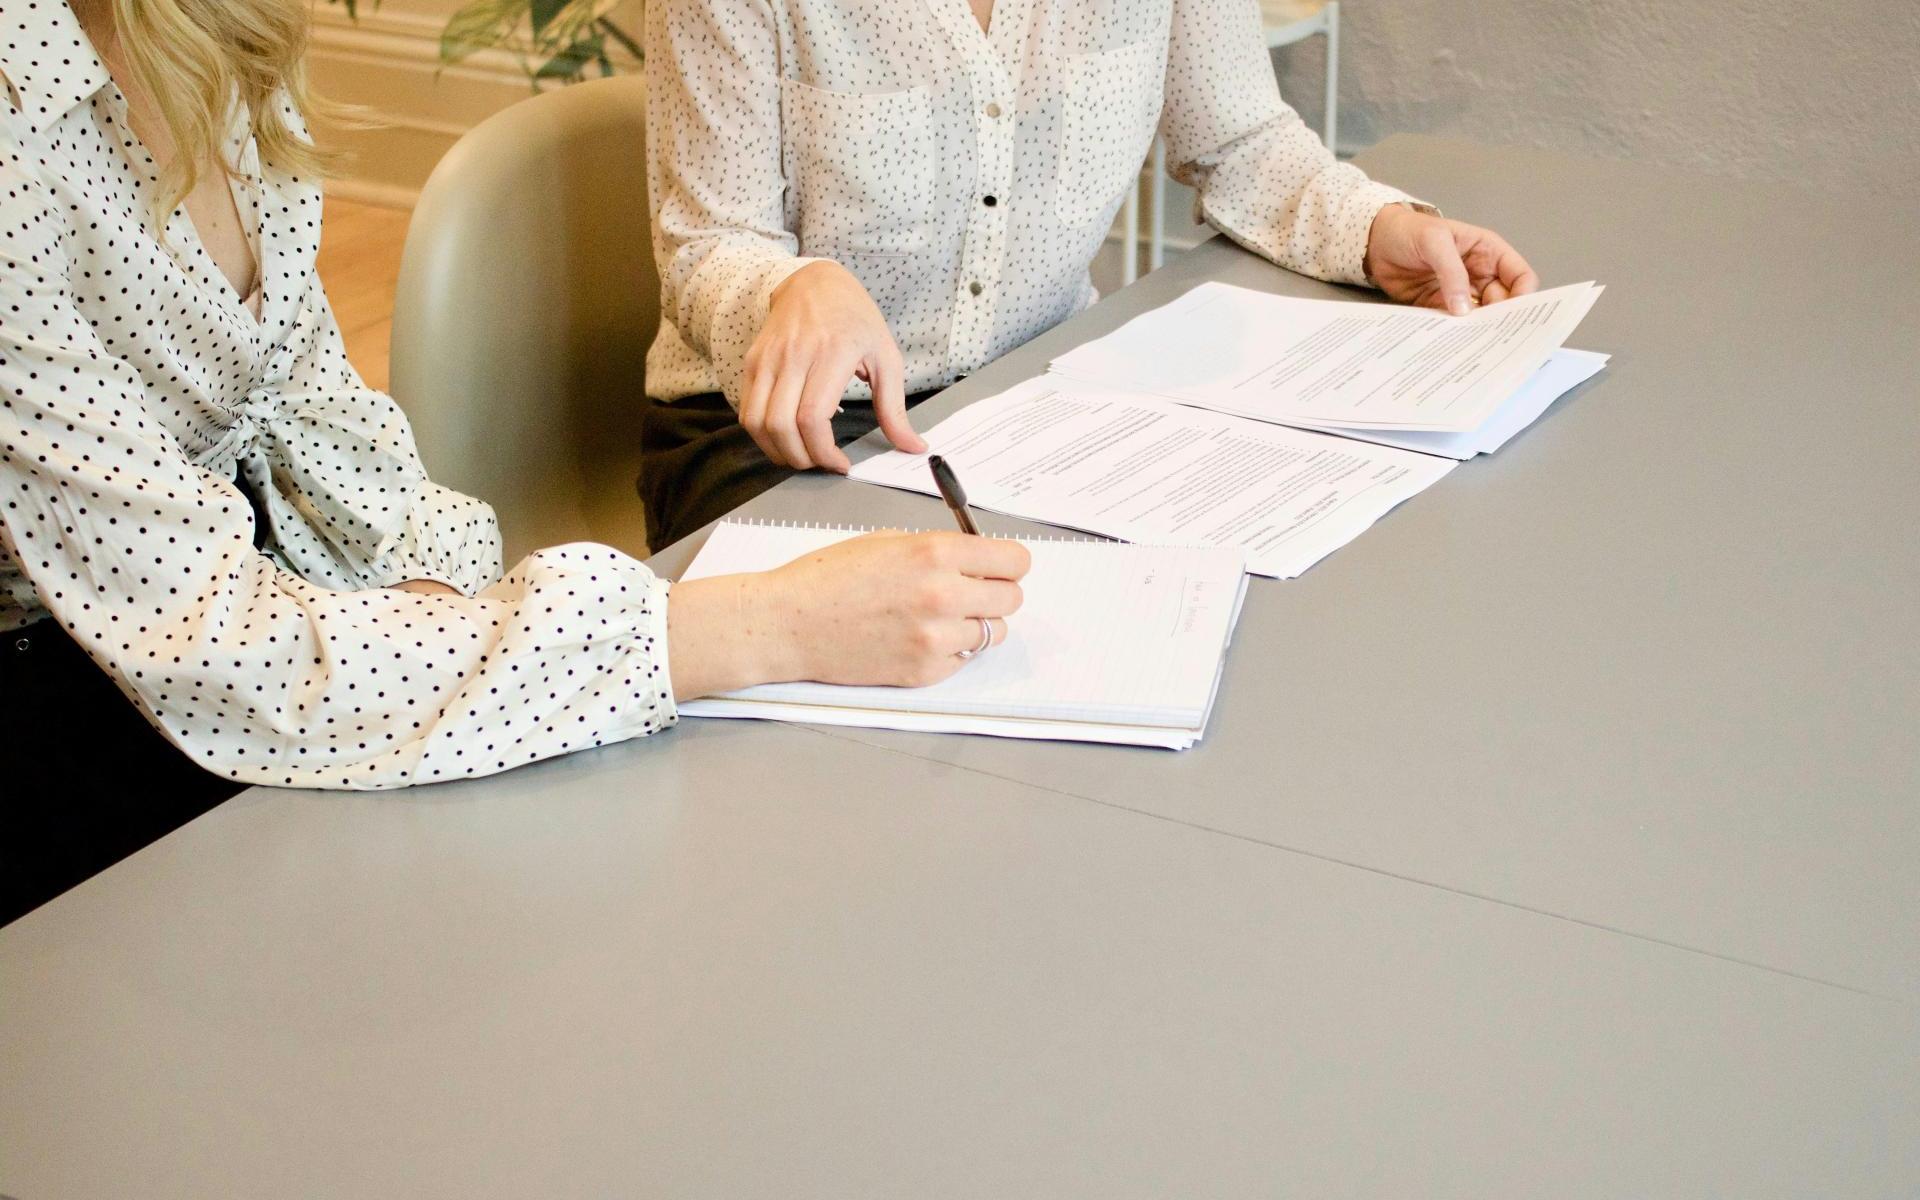 Bild zeigt einen Schreibtisch mit Papier. 2 Damen nur der Oberkörper ist zu sehen bearbeiten dieses Papier